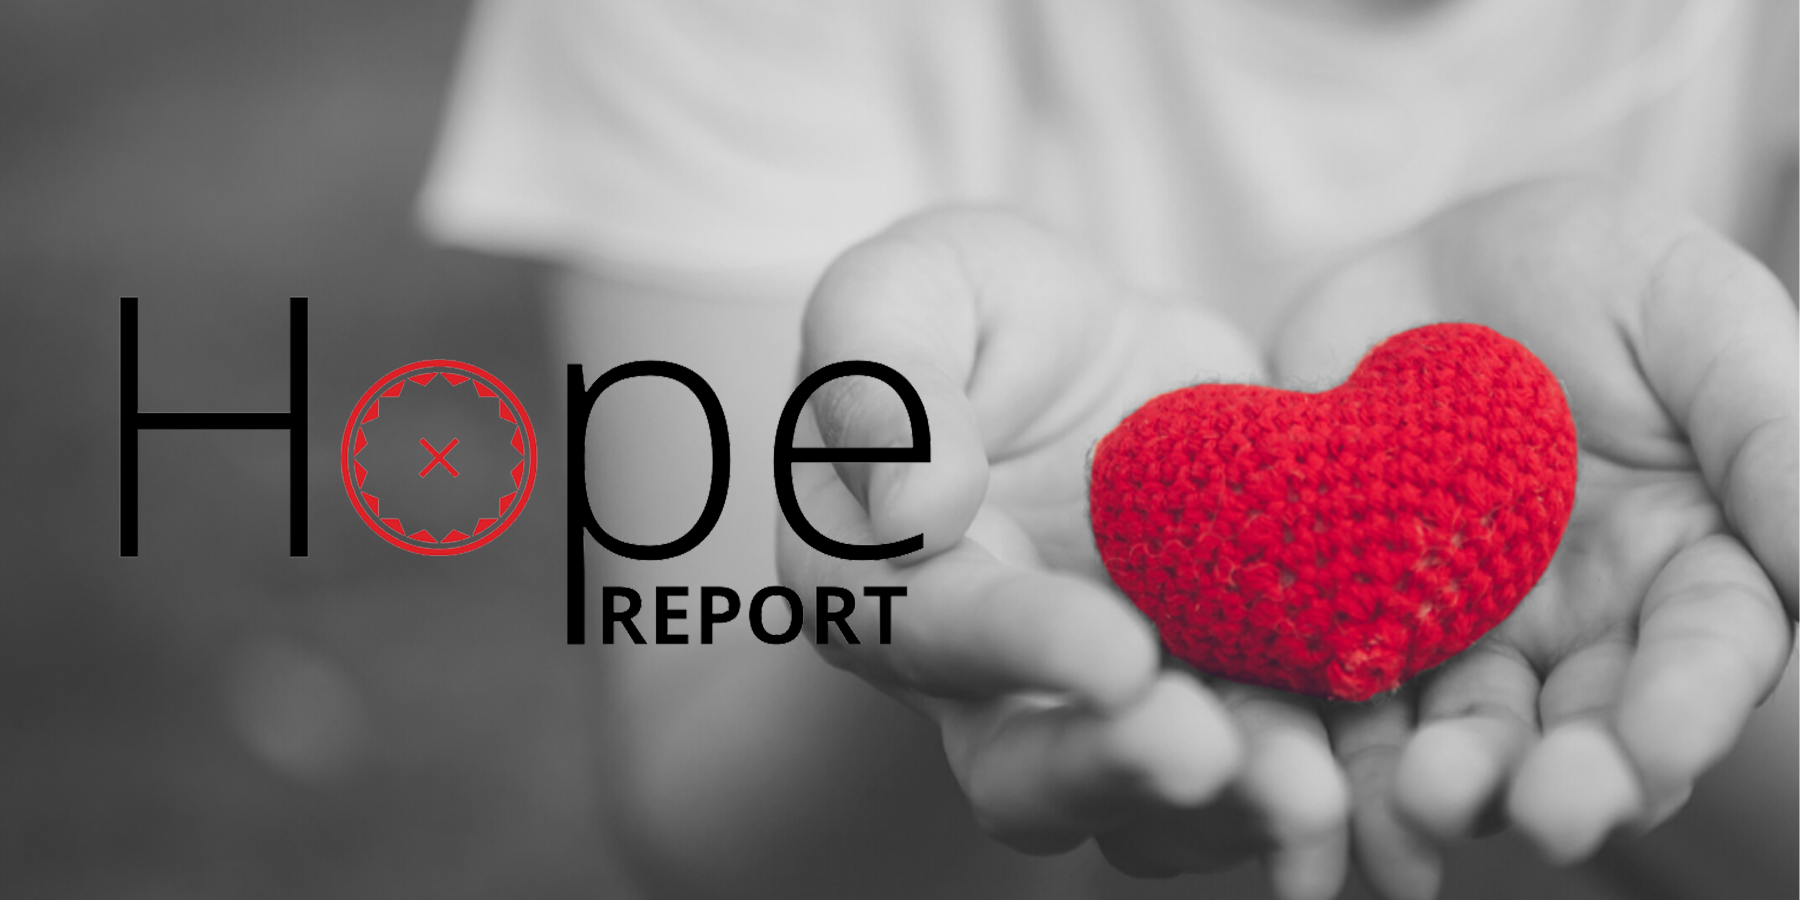 hope report